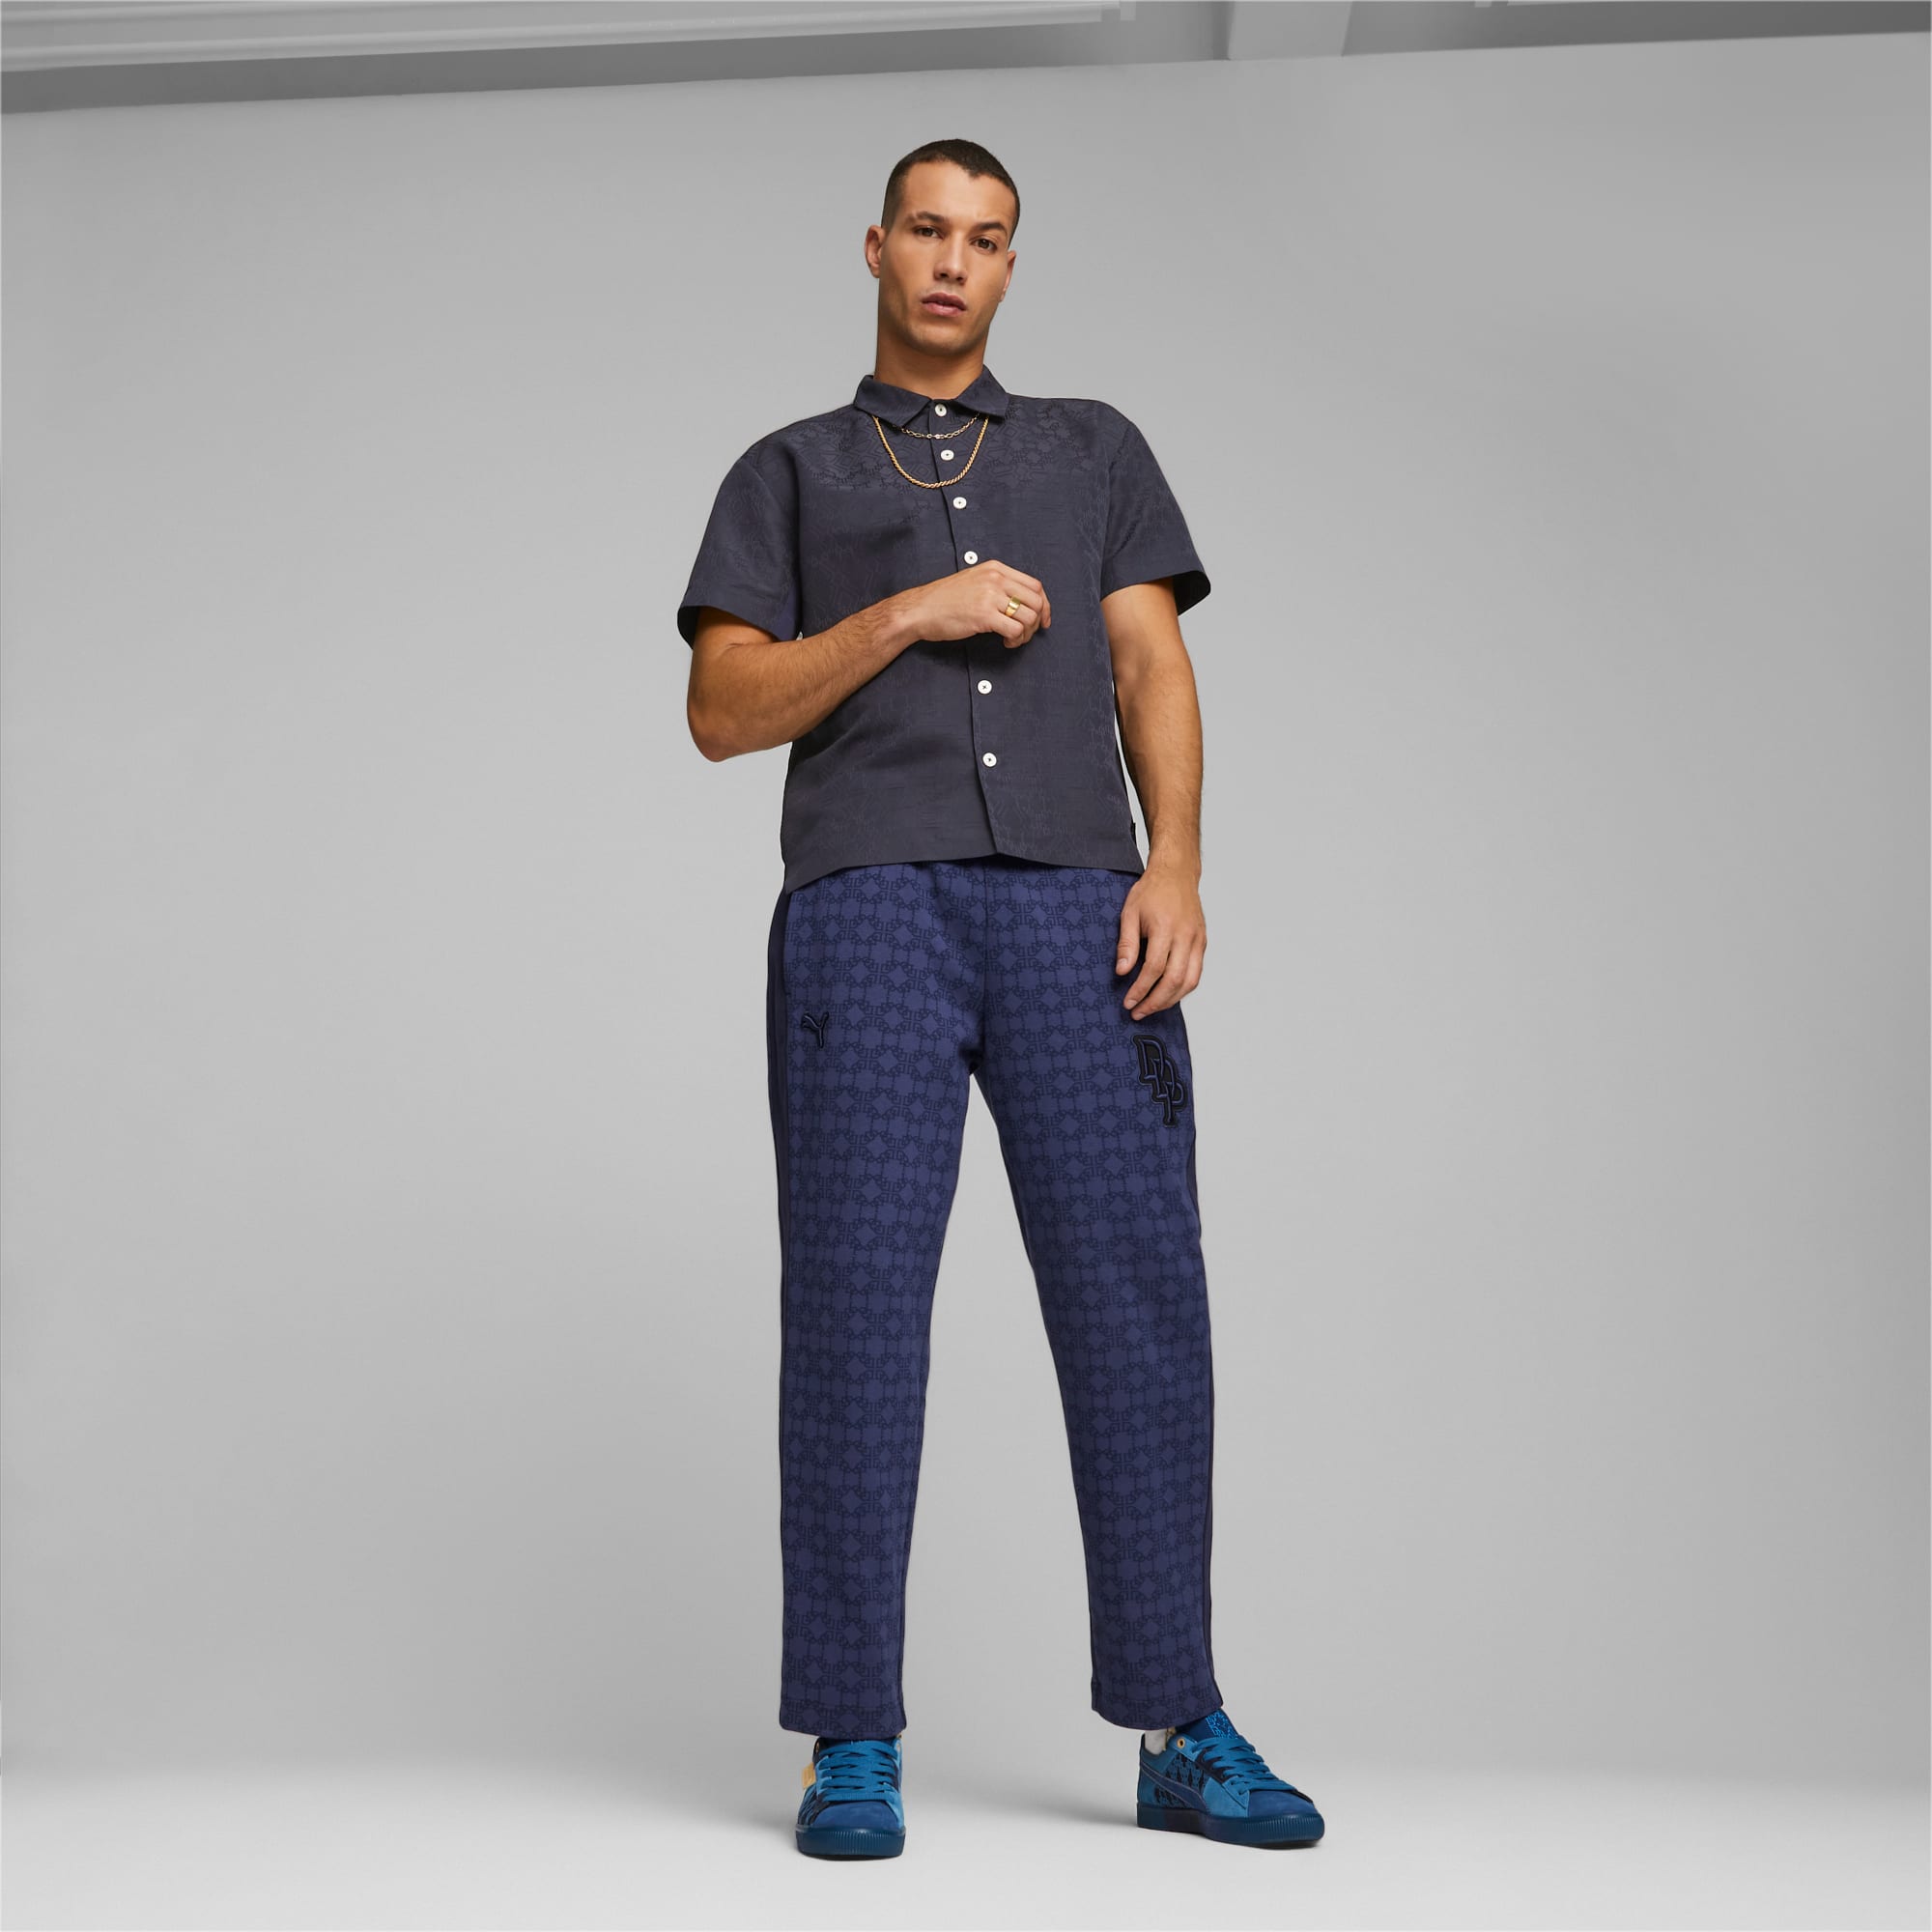 Louis Vuitton Men's Monogram Joggers & Sweatpants